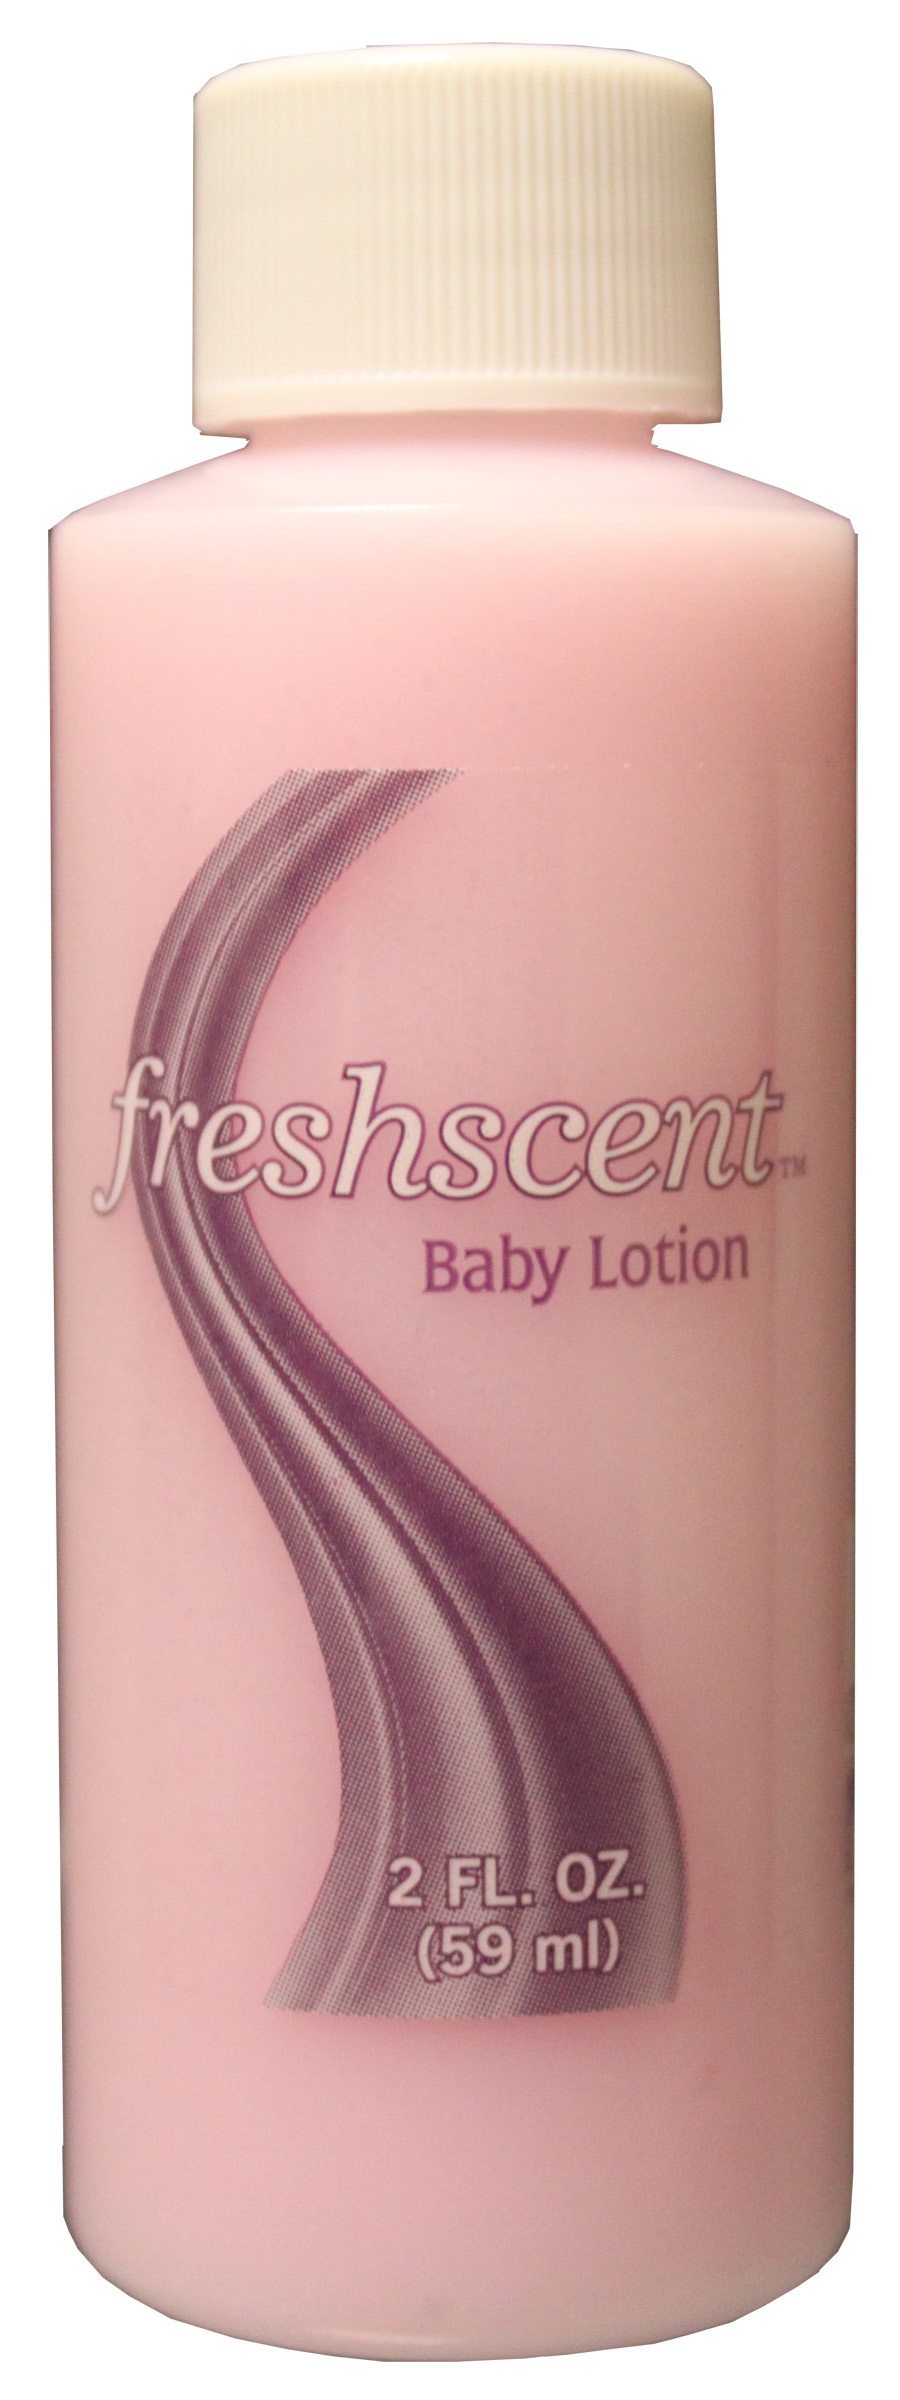 Freshscent 2 oz. Baby Lotion